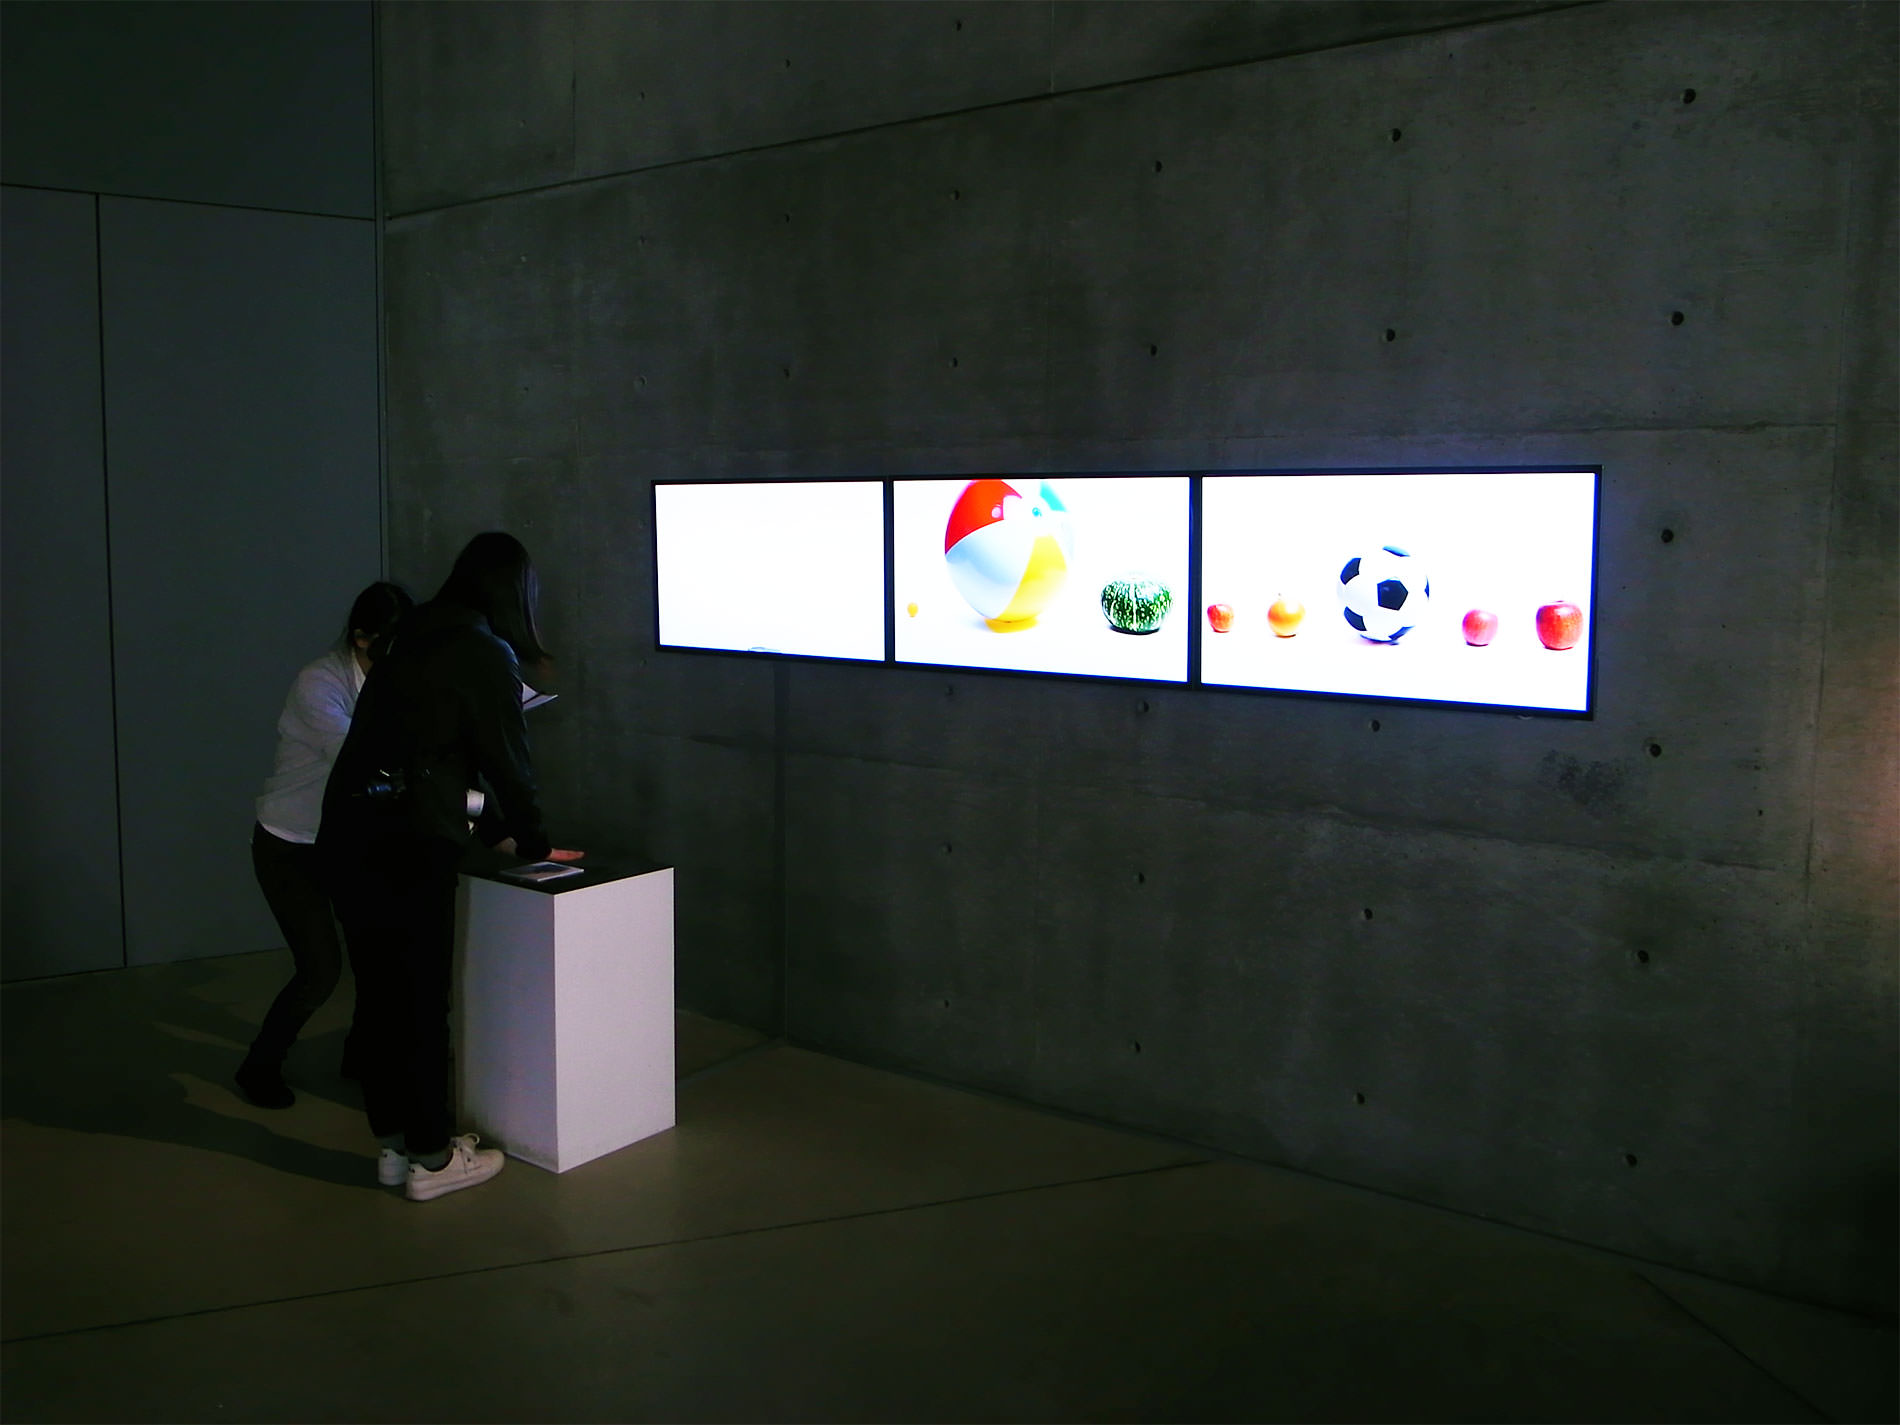 20150329_単位展 | Measuring exhibition 2015, Tokyo